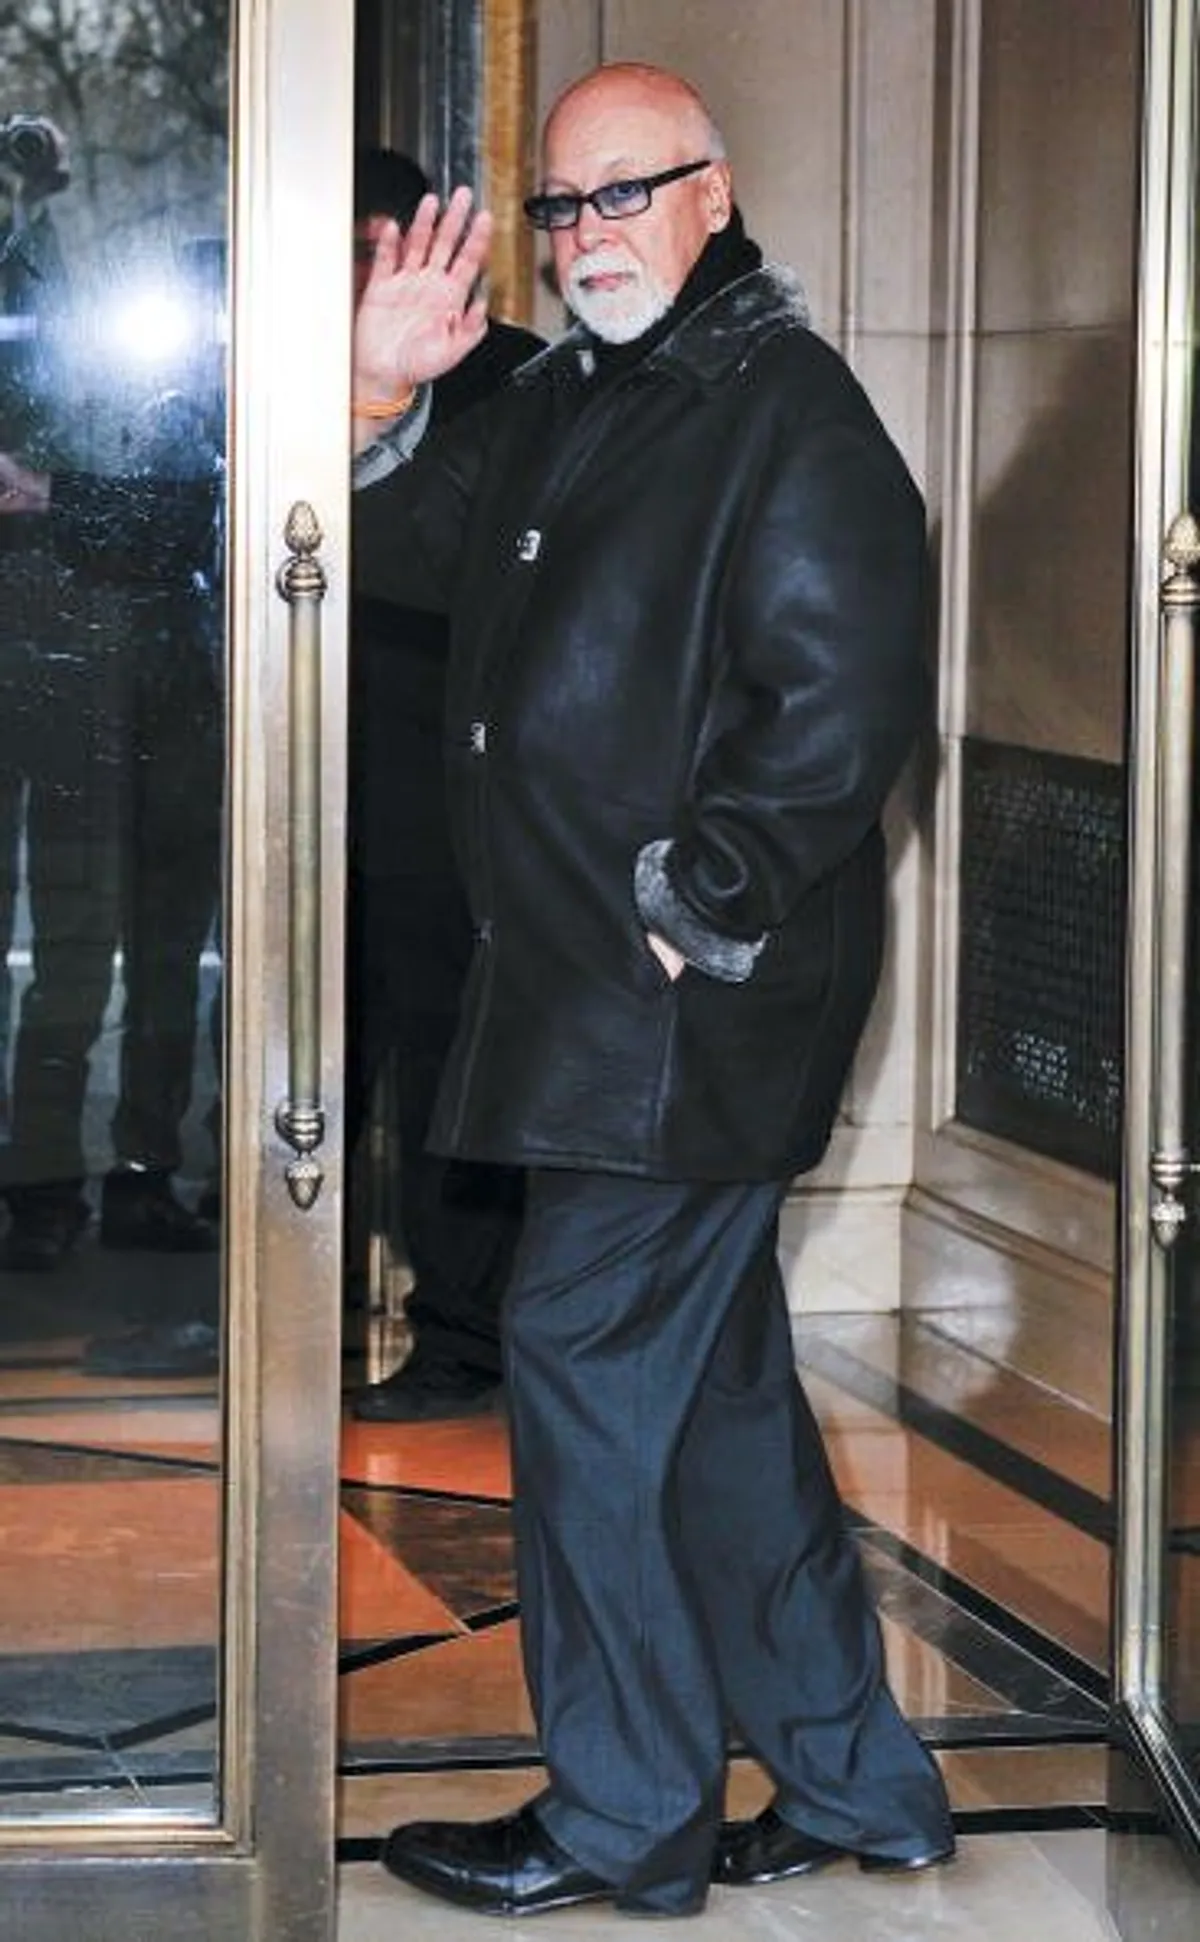 Rene Angelil entre dans son hôtel de Midtown Manhattan le 10 mars 2010 à New York. |Photo : Getty Images